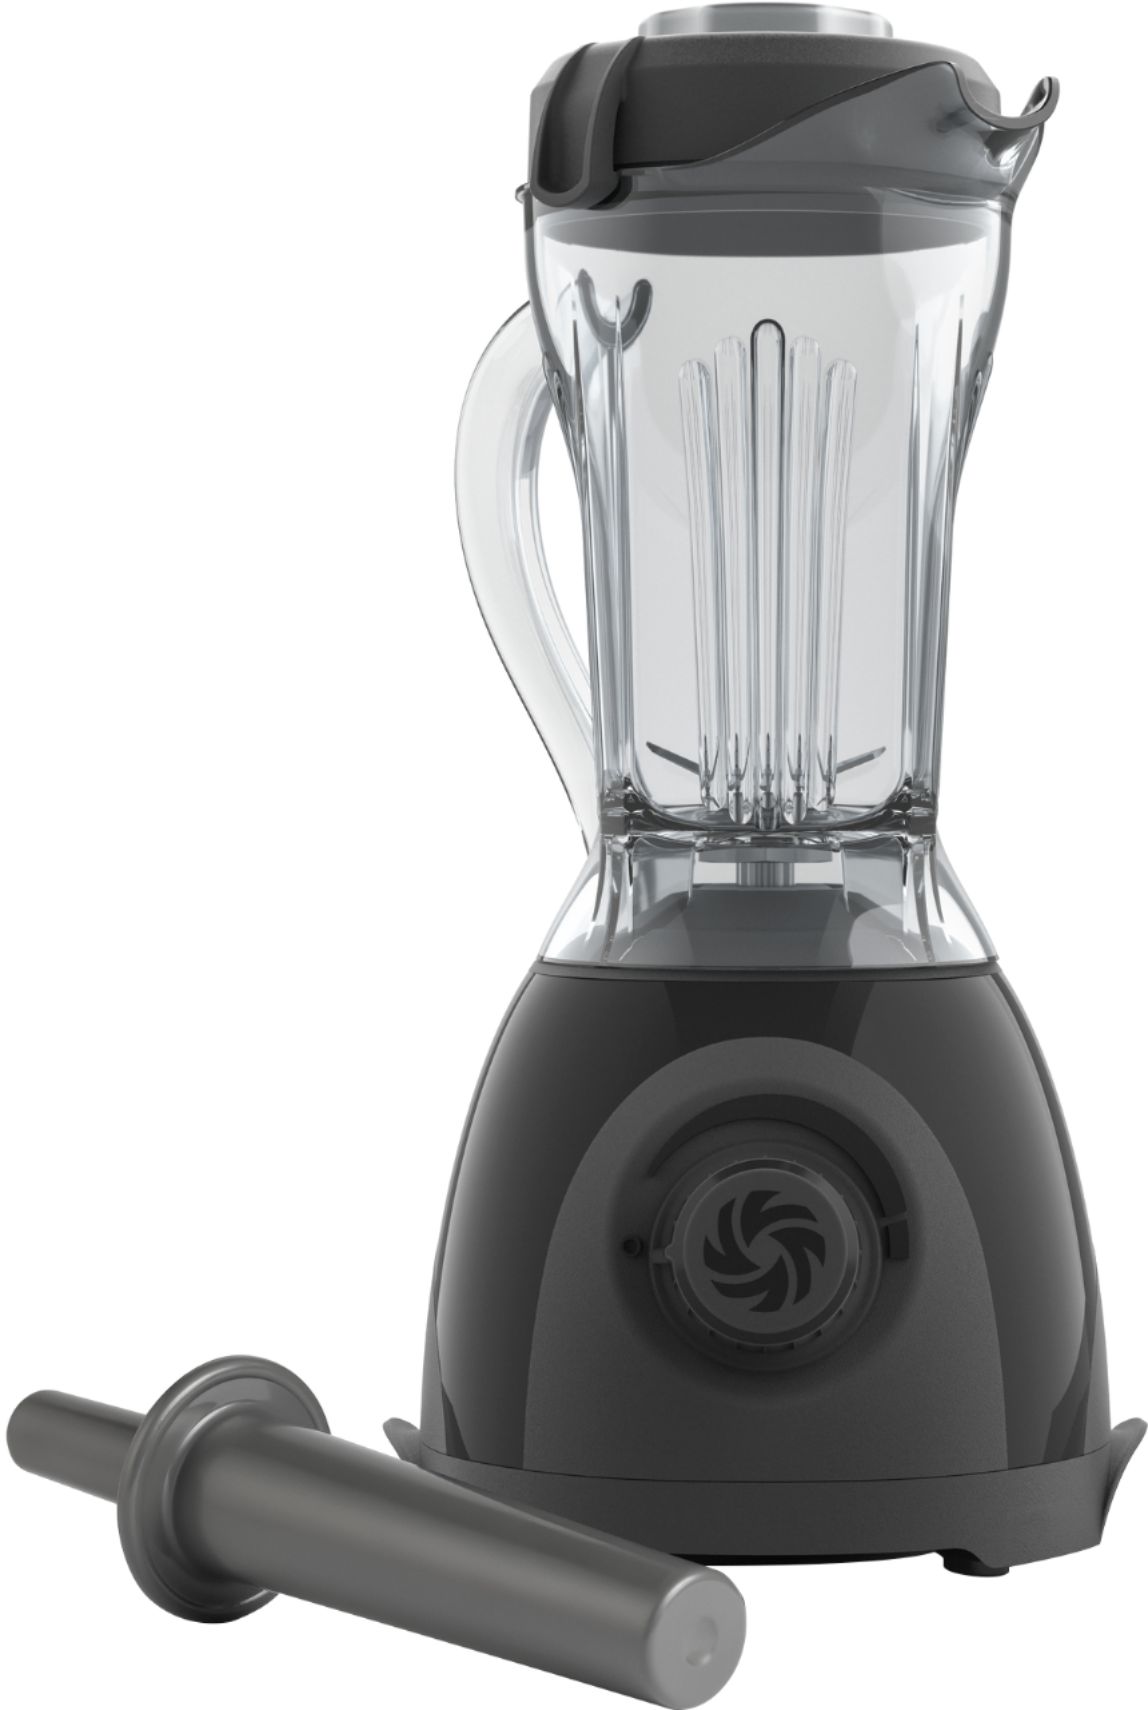 Ovente 13.5 oz. 1000-Watt Black Robust Professional Blender with BPA Free, Blender Jar Travel Mug and Tamper